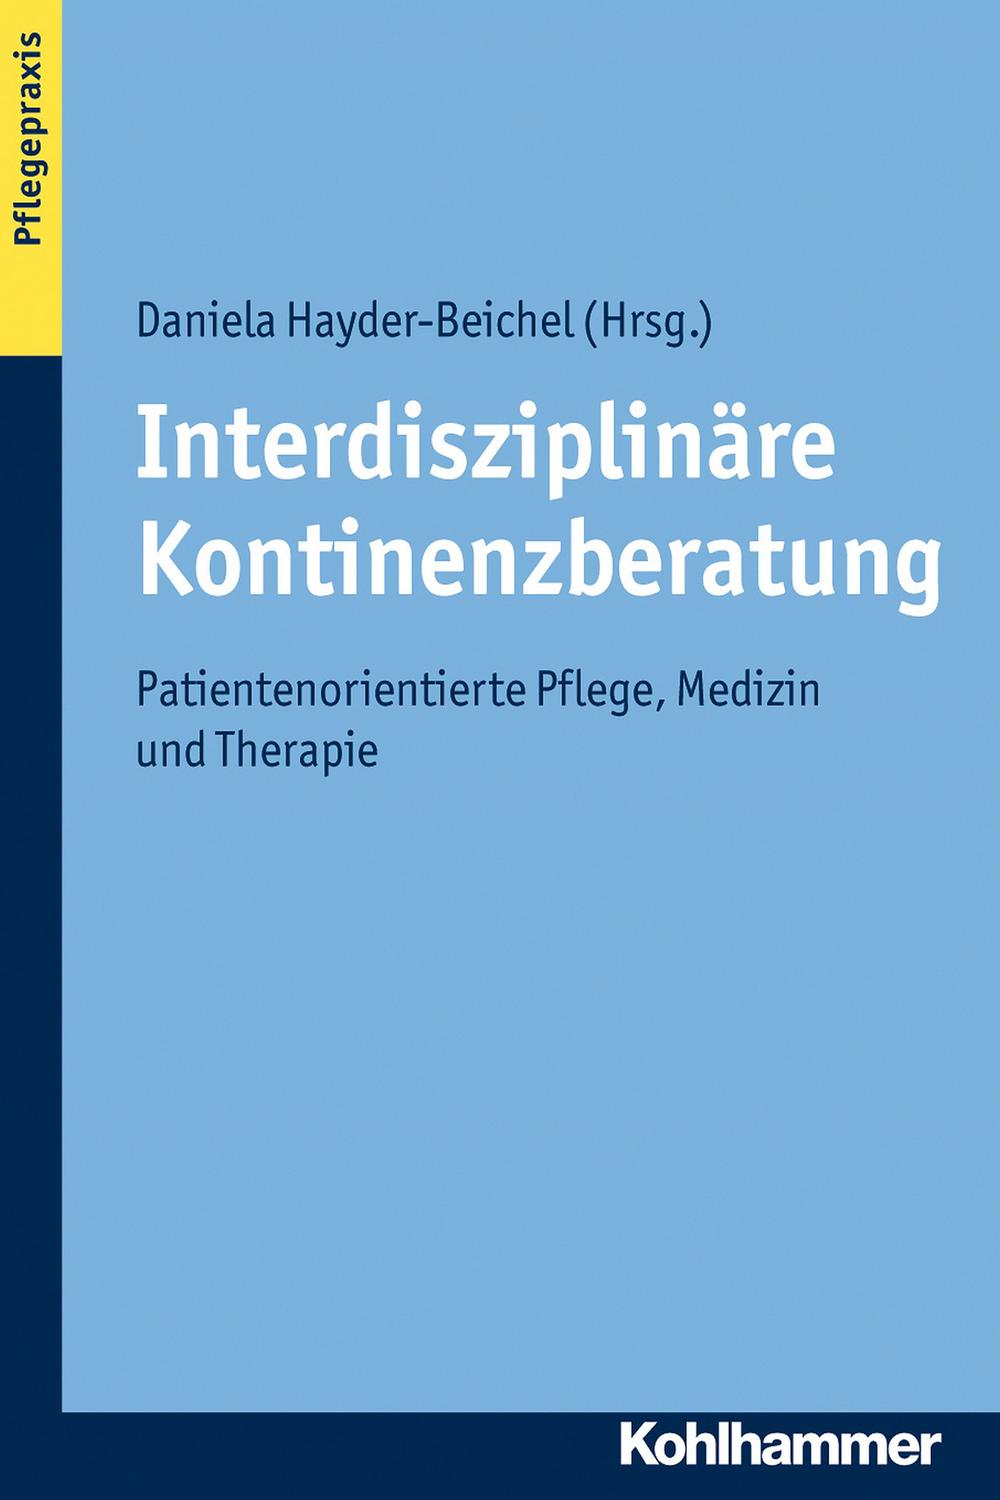 Interdisziplinäre Kontinenzberatung - Daniela Hayder-Beichel